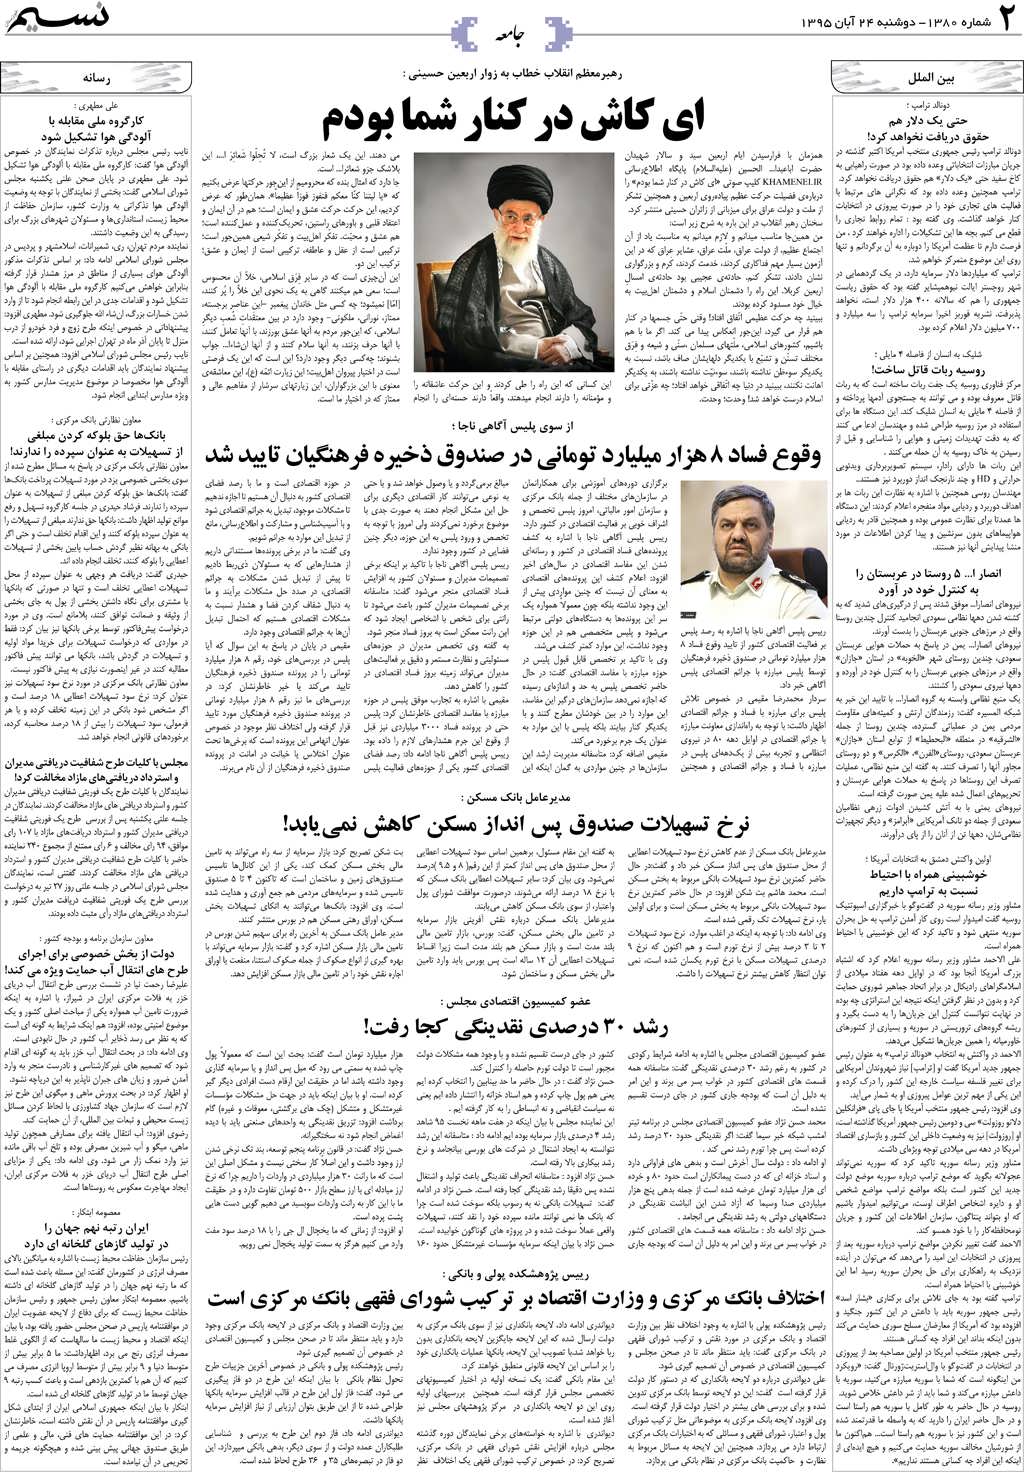 صفحه جامعه روزنامه نسیم شماره 1380